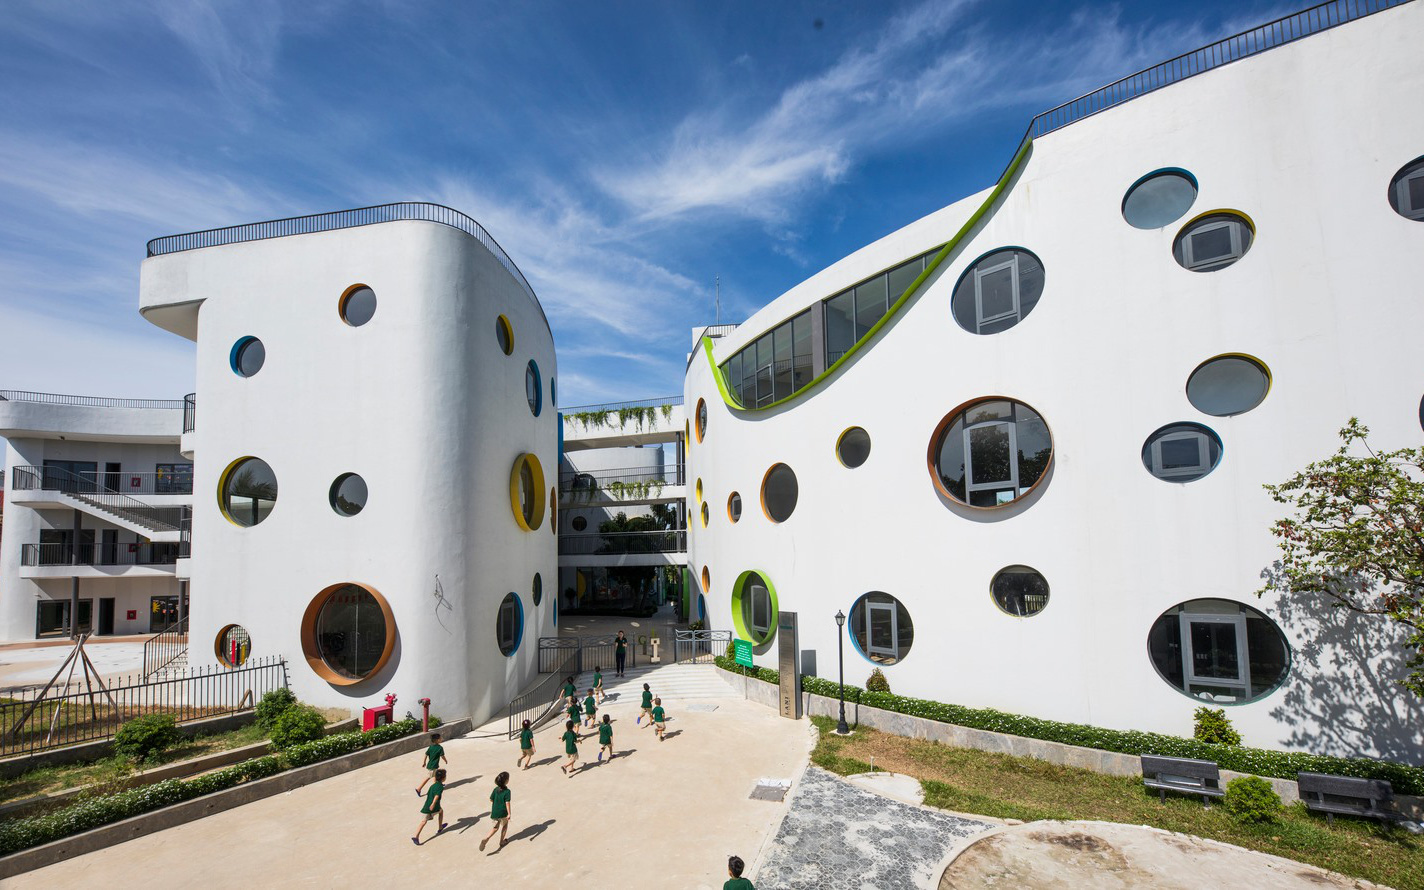 Ngắm ngôi trường mầm non hơn 50 tỷ đồng với thiết kế đẹp như mơ, bố mẹ ưng ngay từ cái nhìn đầu tiên